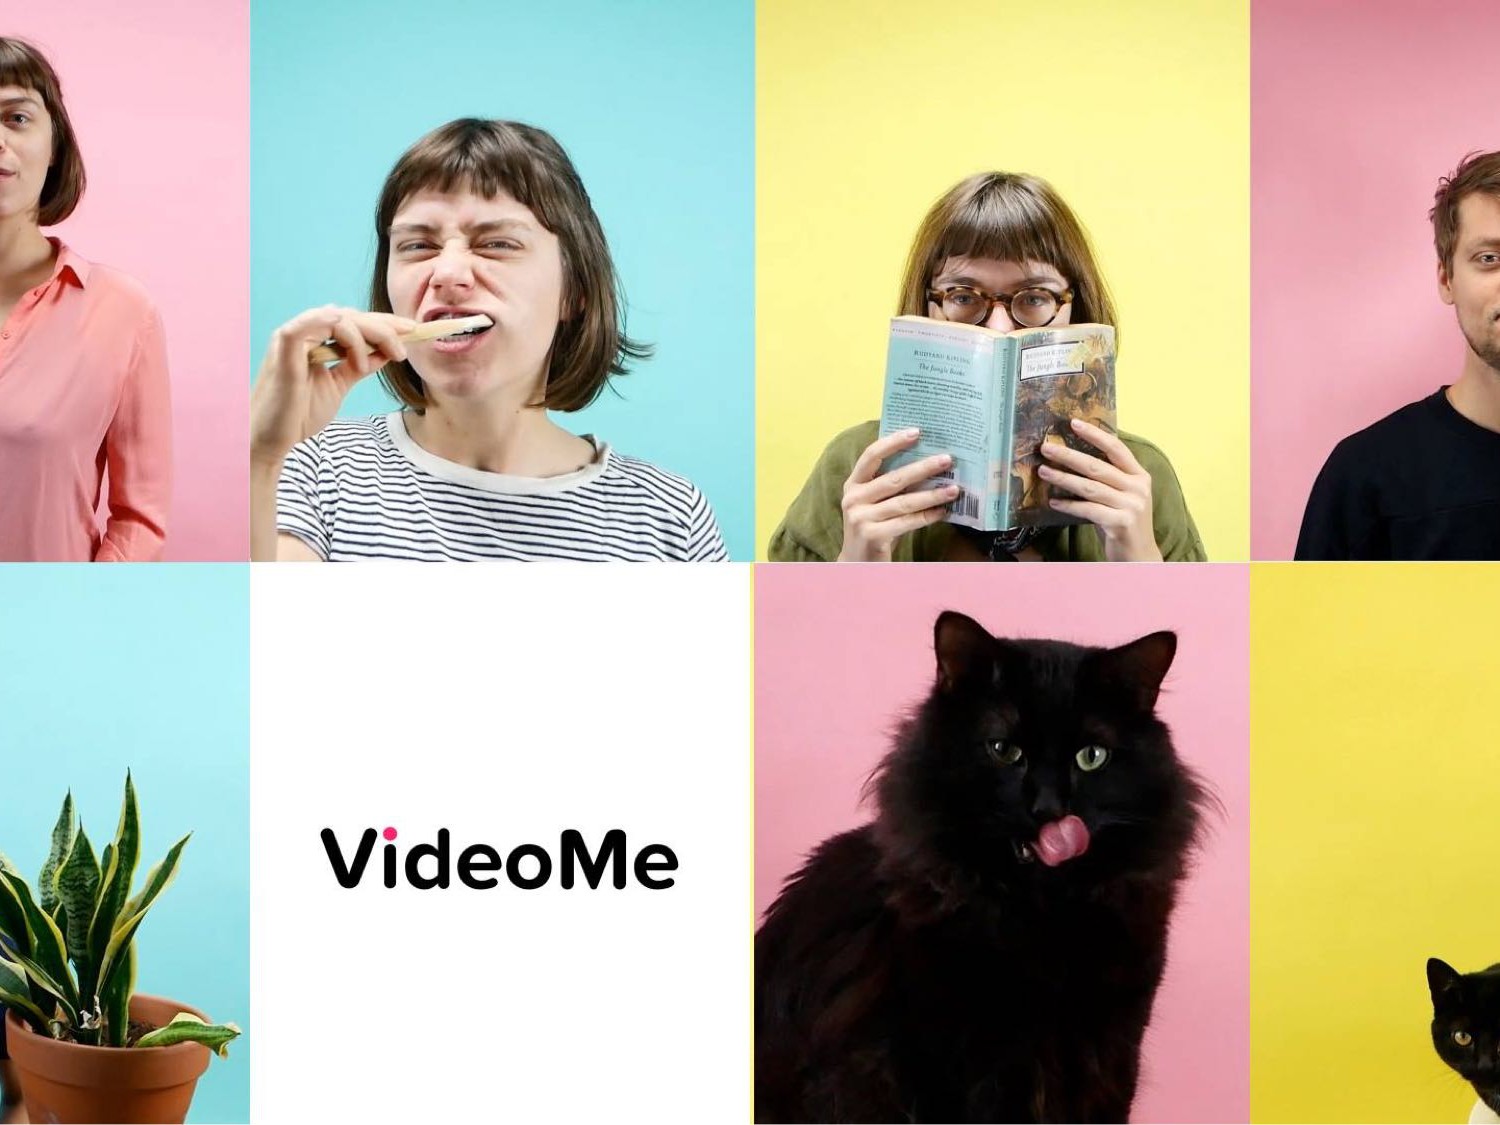 VideoMe campagne 2019, creatief branding agency, videoproductie. waarde video content maken